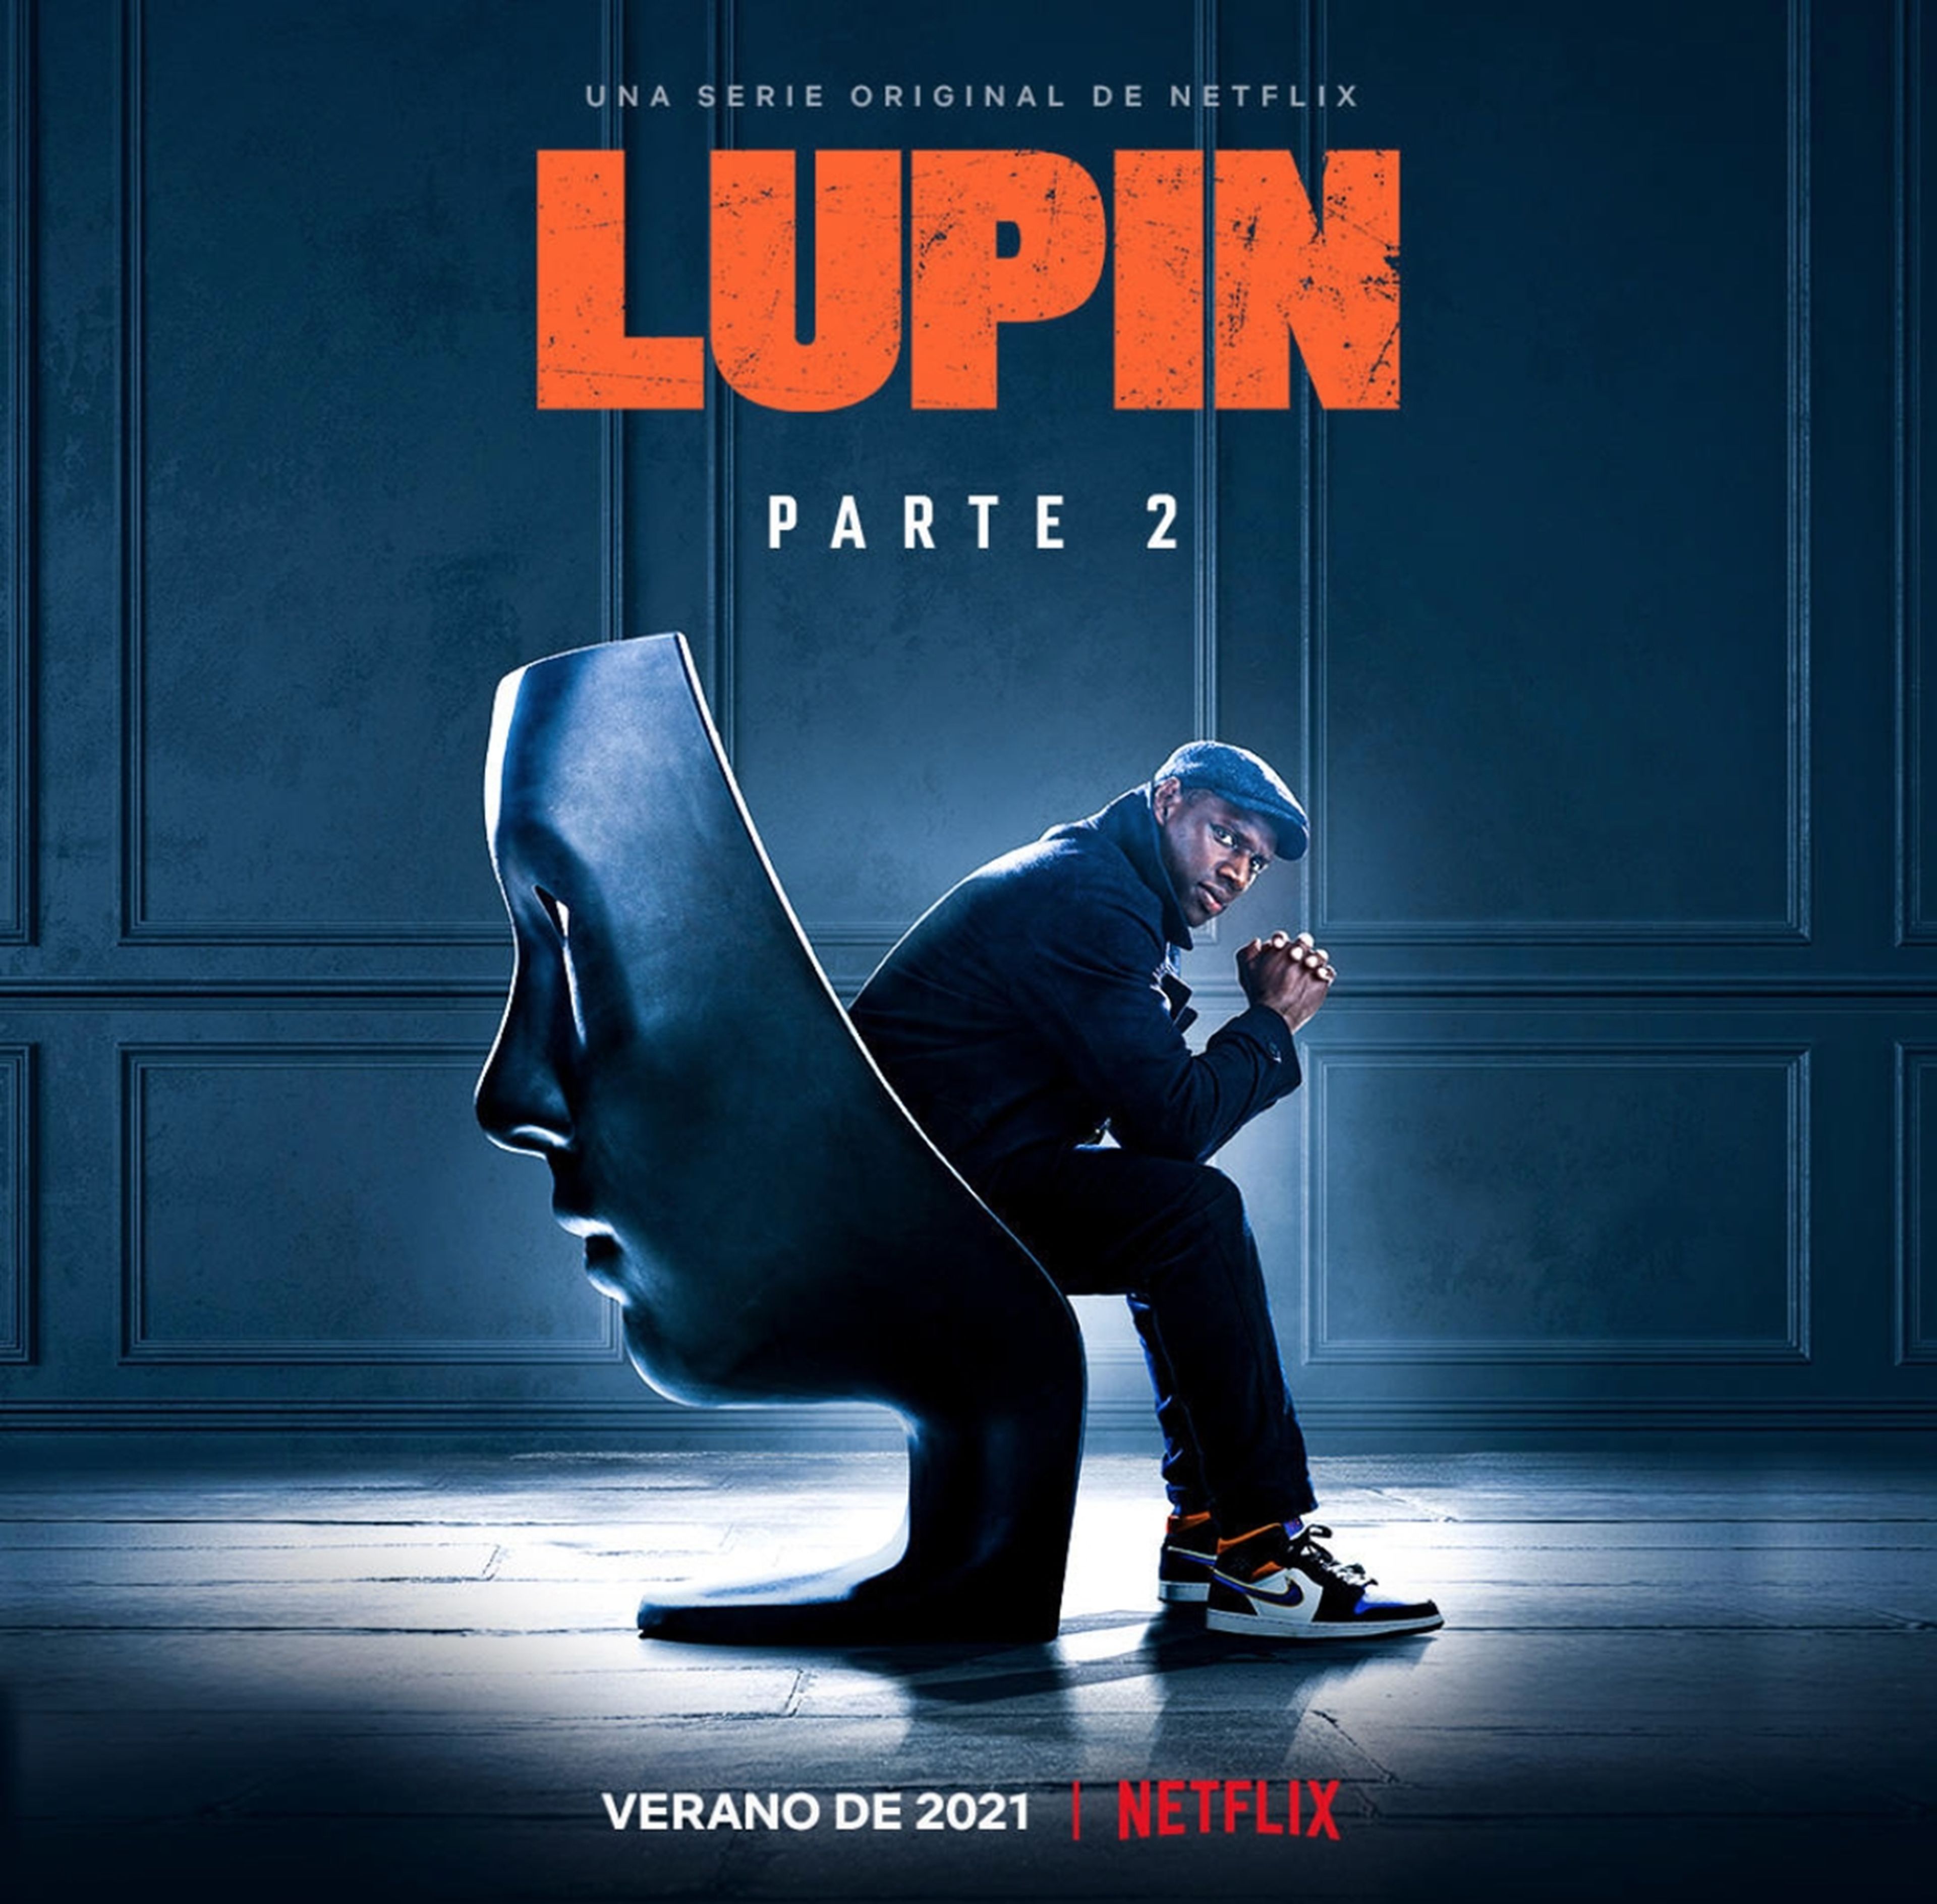 Póster de Lupin Parte 2, que llegará a Netflix en verano de 2021